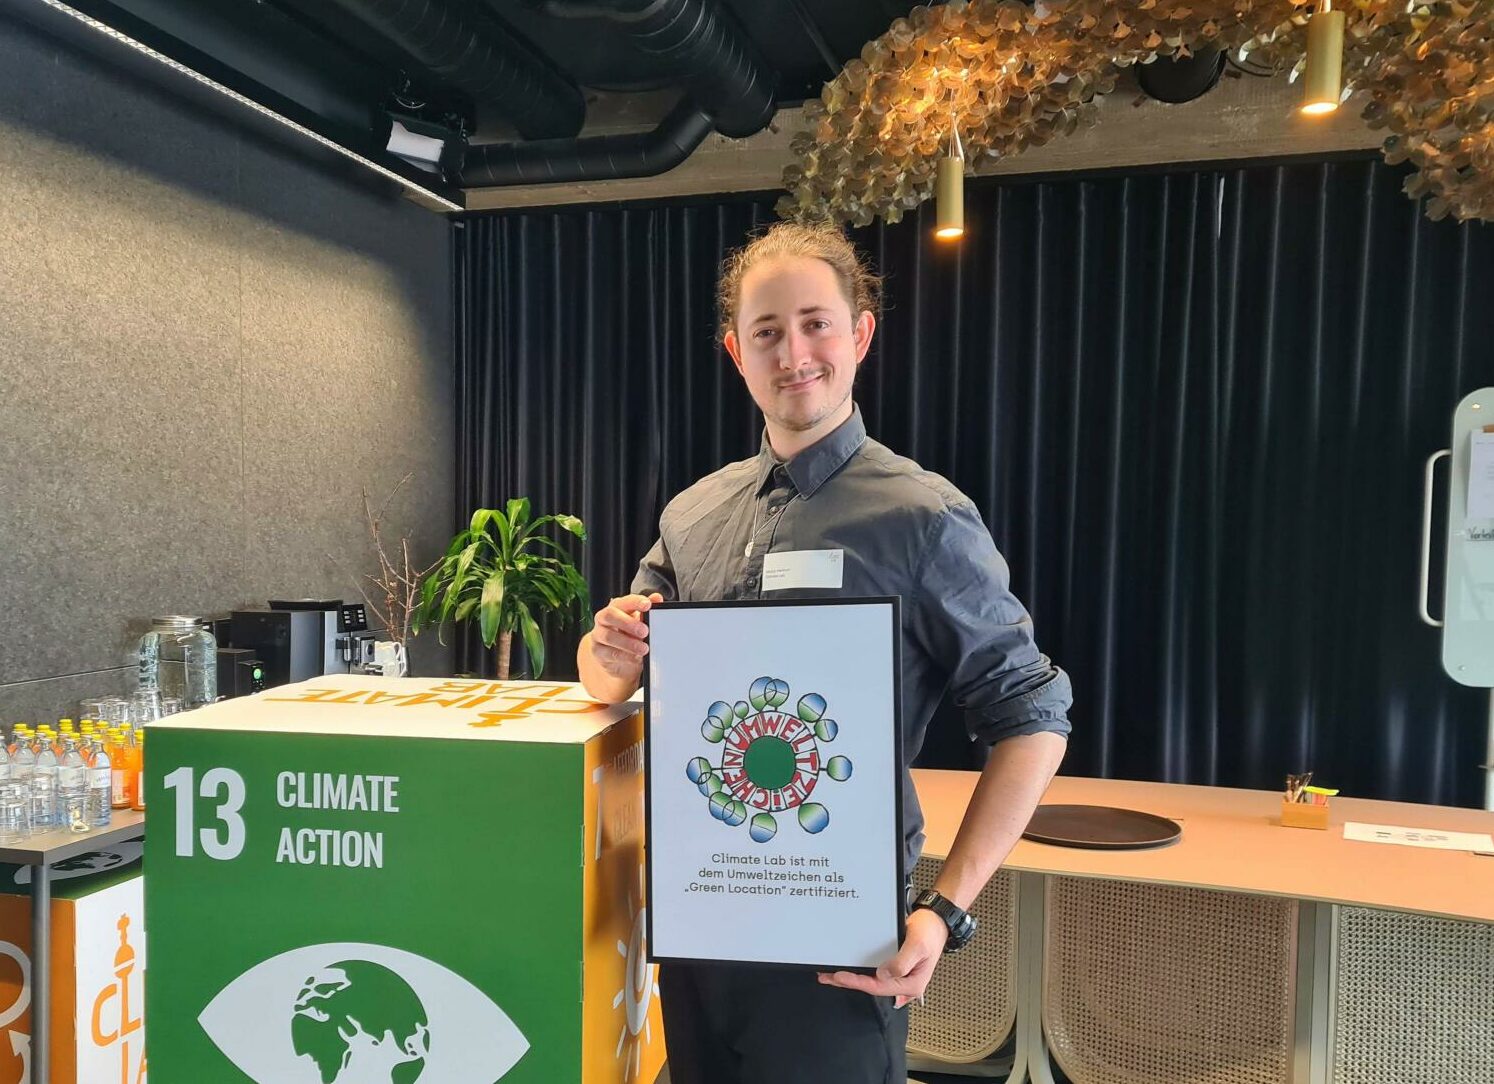 Moritz Hentrich mit unserem Green Location Zertifikat im Climate Lab. Foto: Markus Palzer-Khomenko